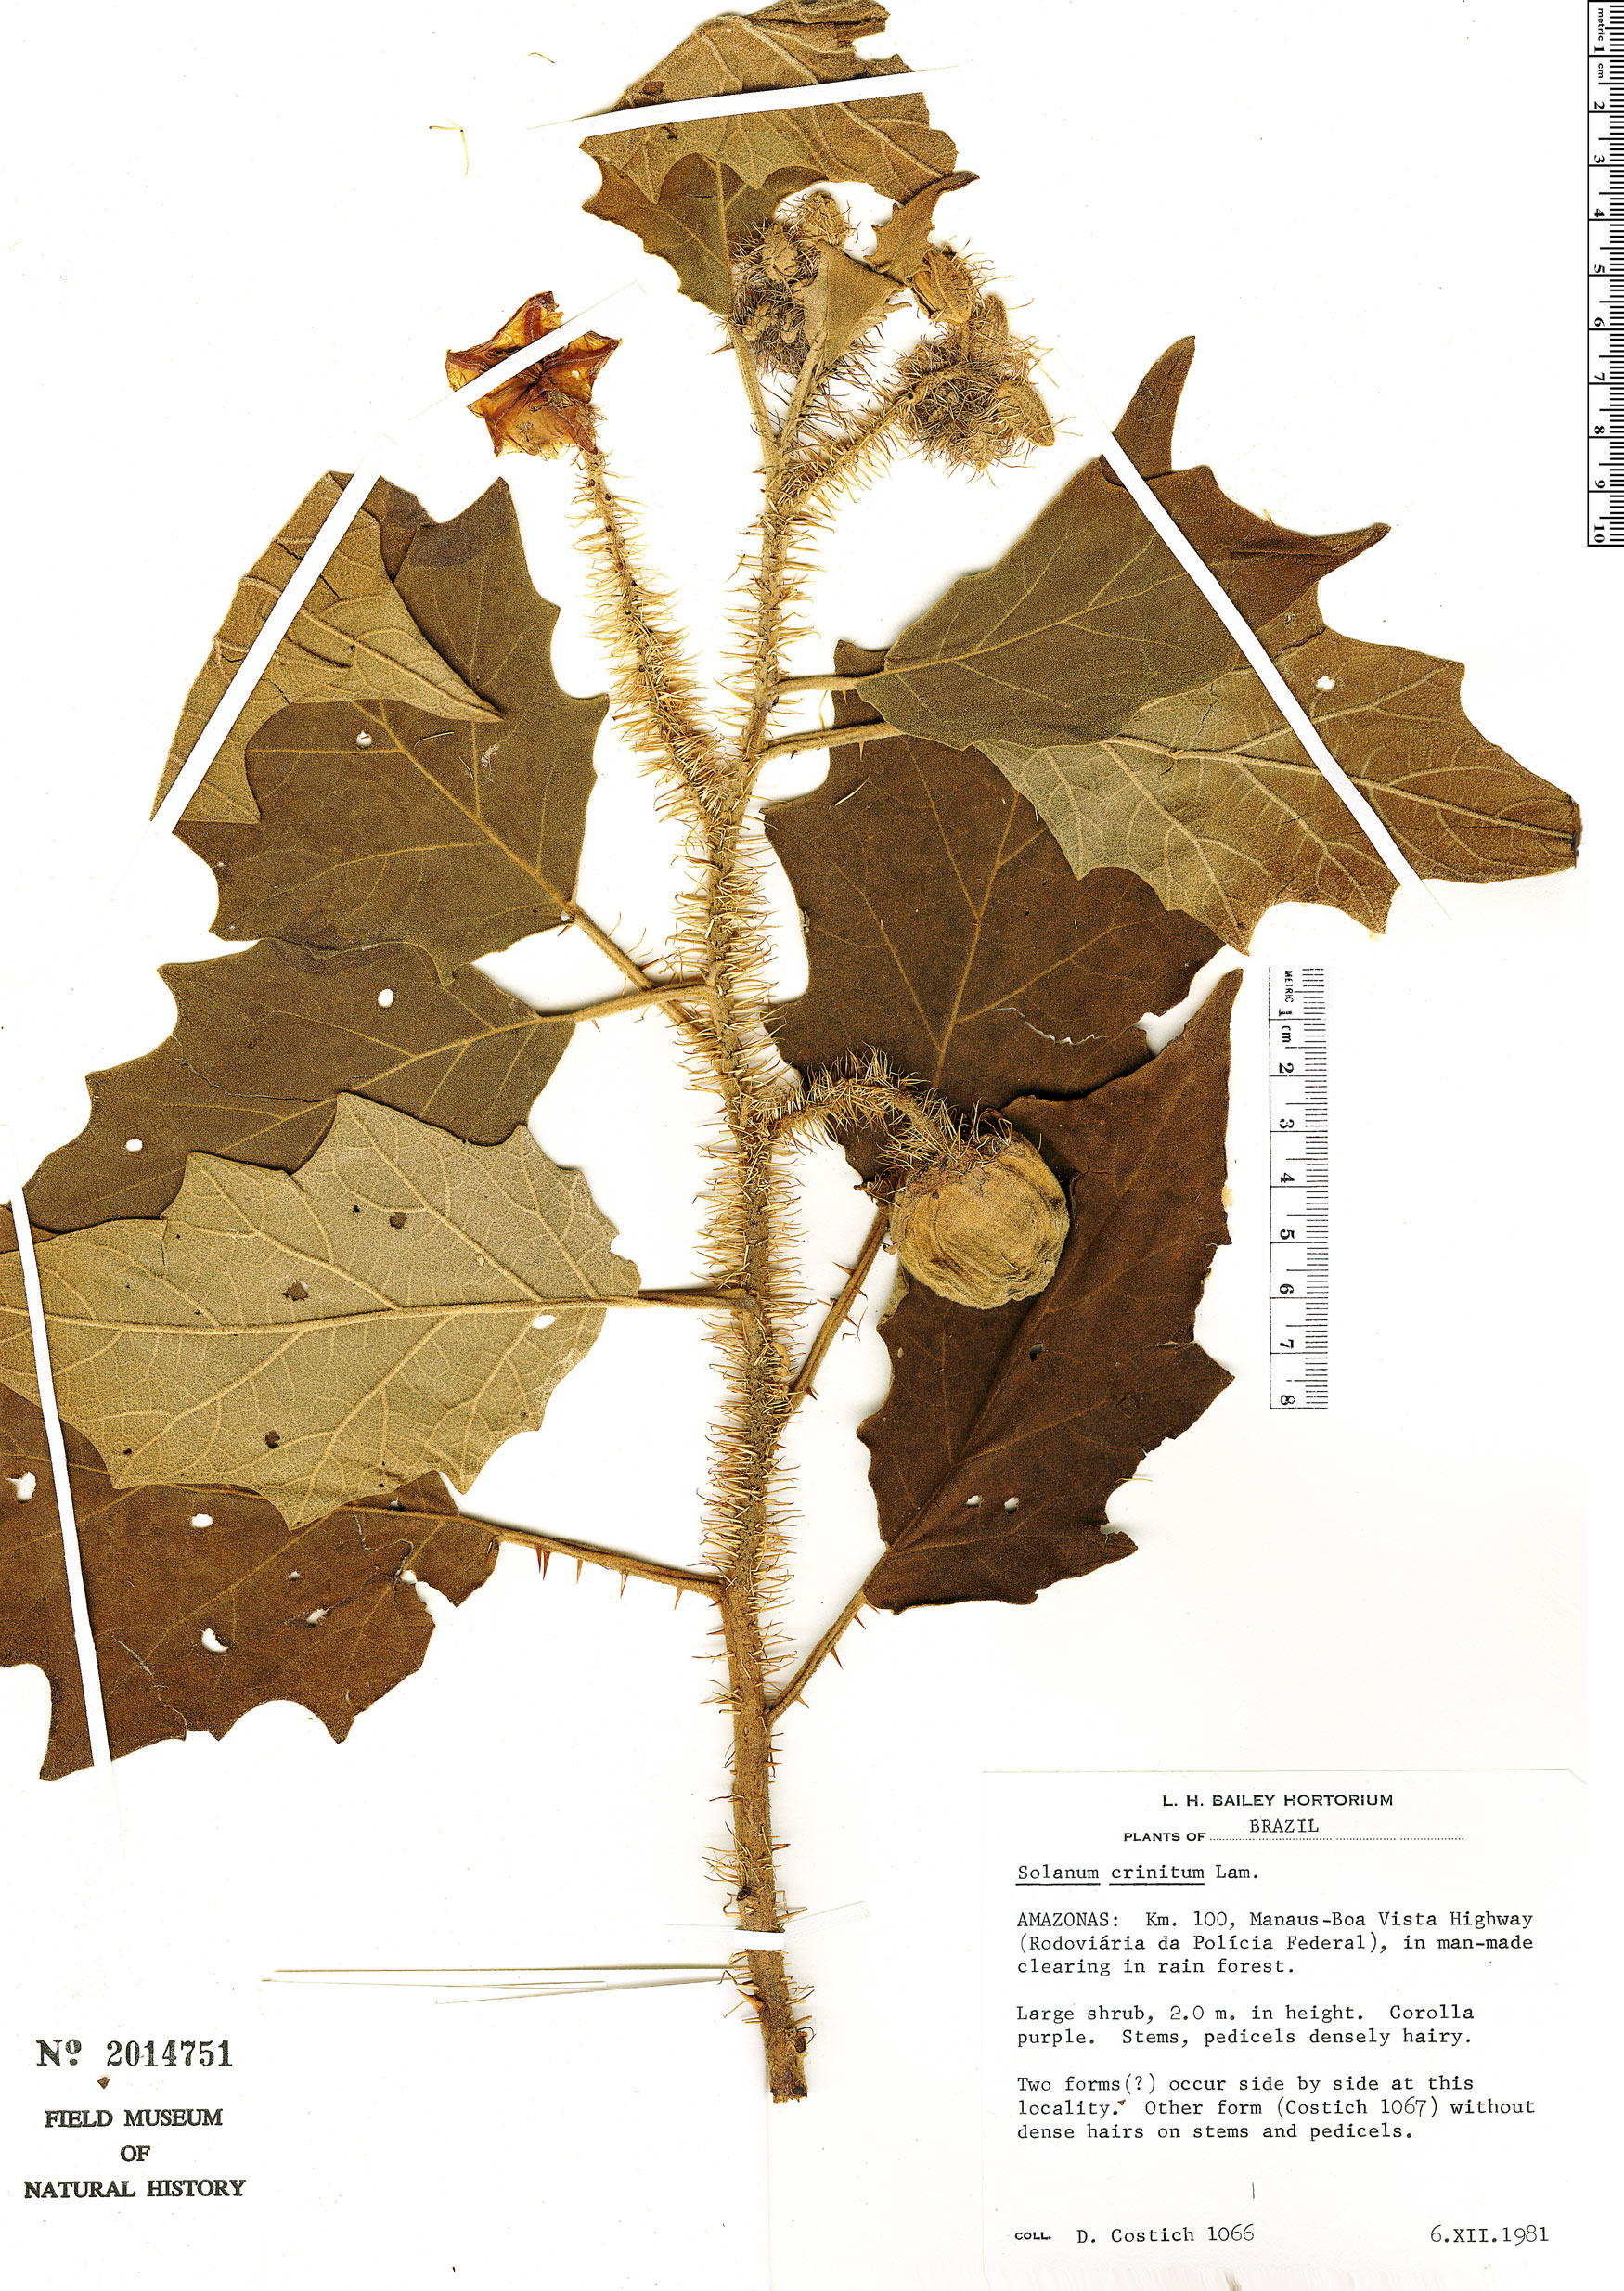 Solanum crinitum image